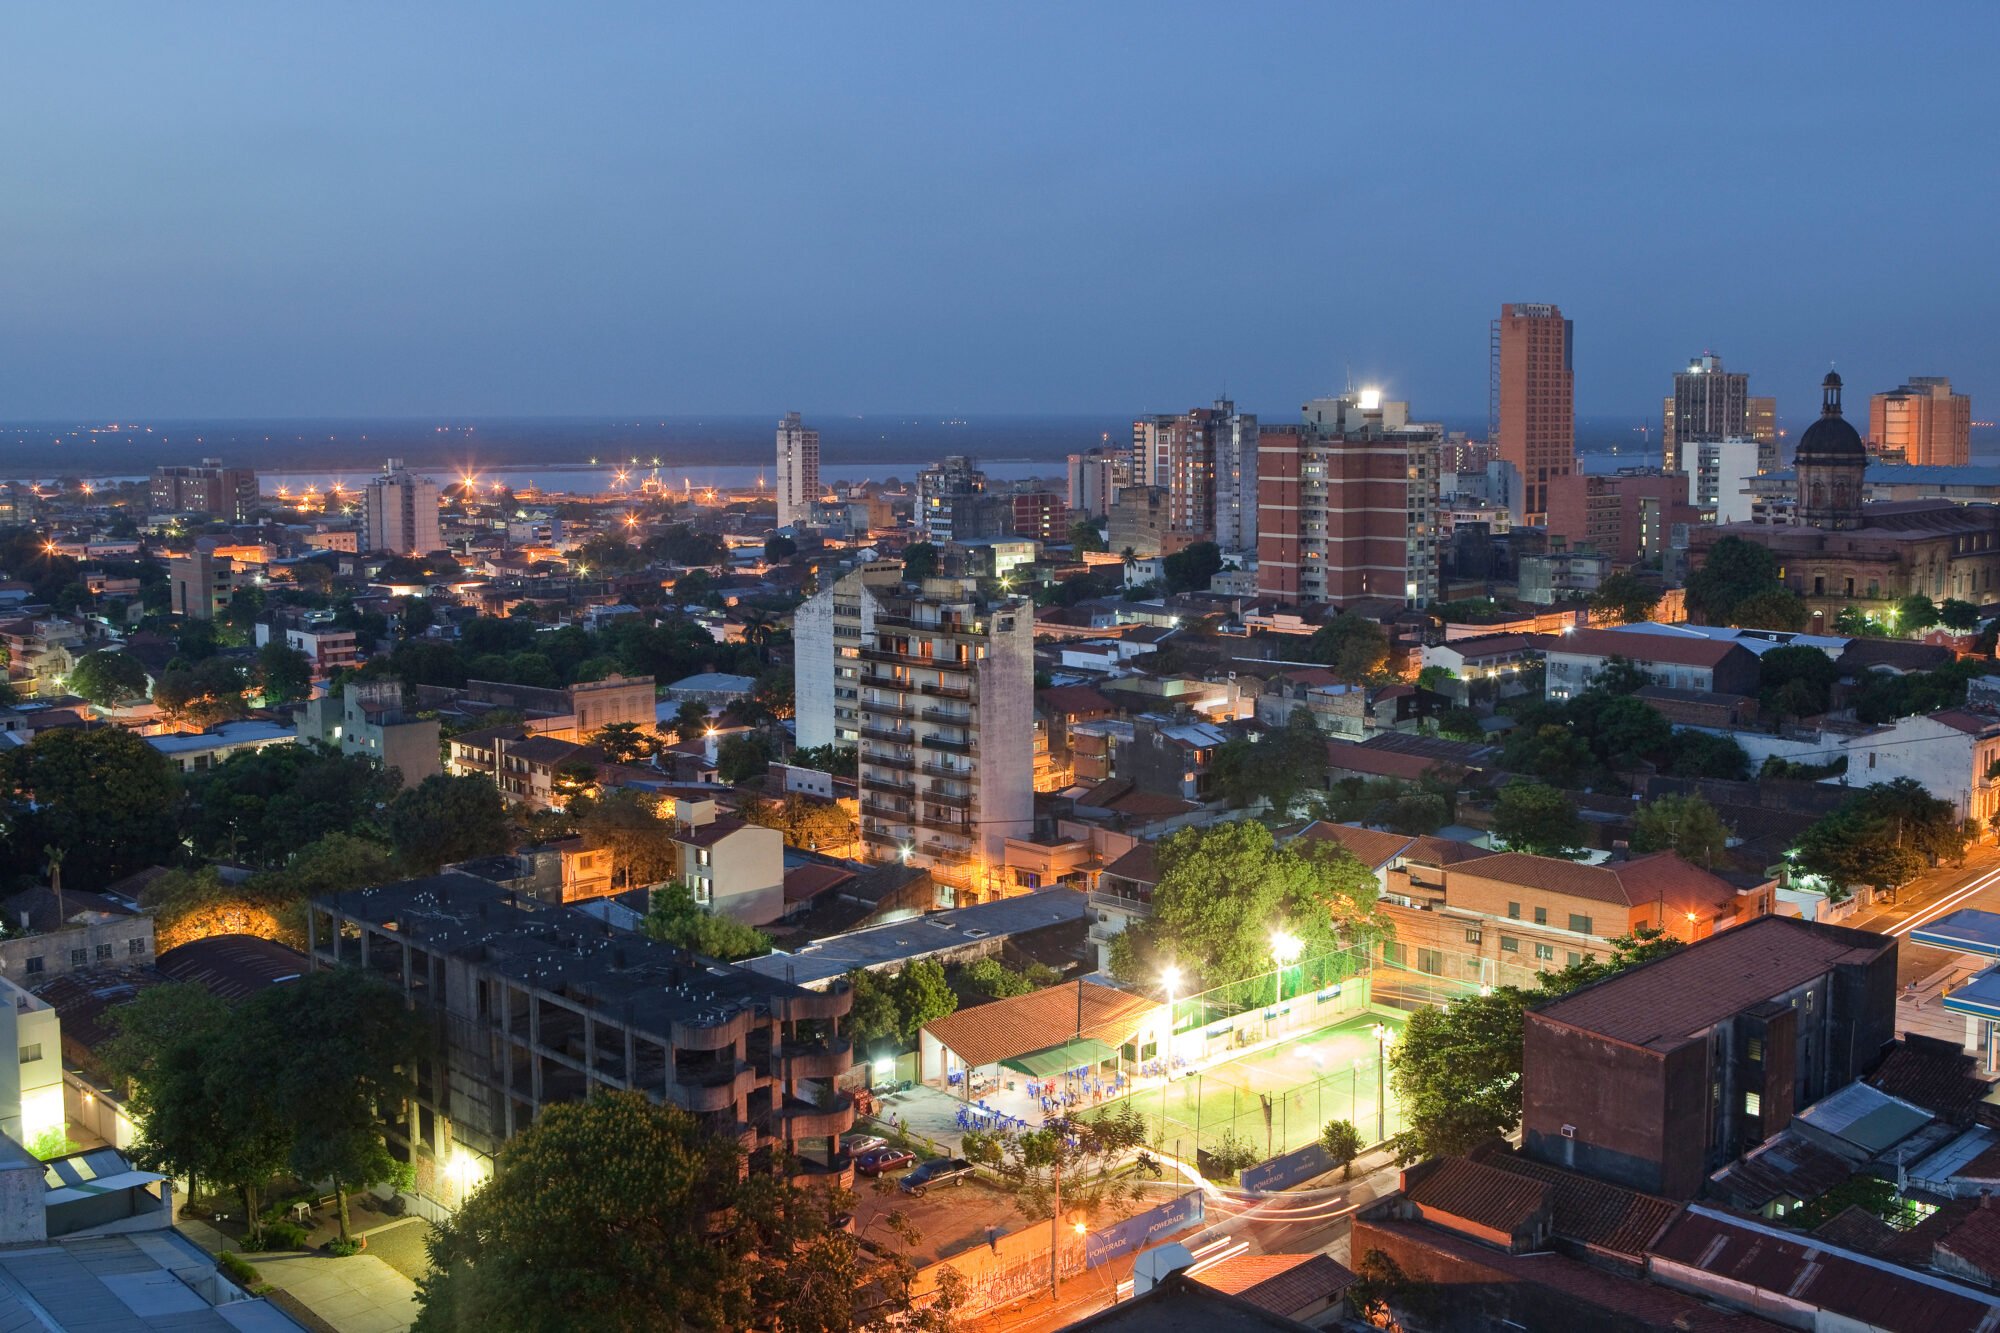 View of Asuncion, Paraguay, at night.